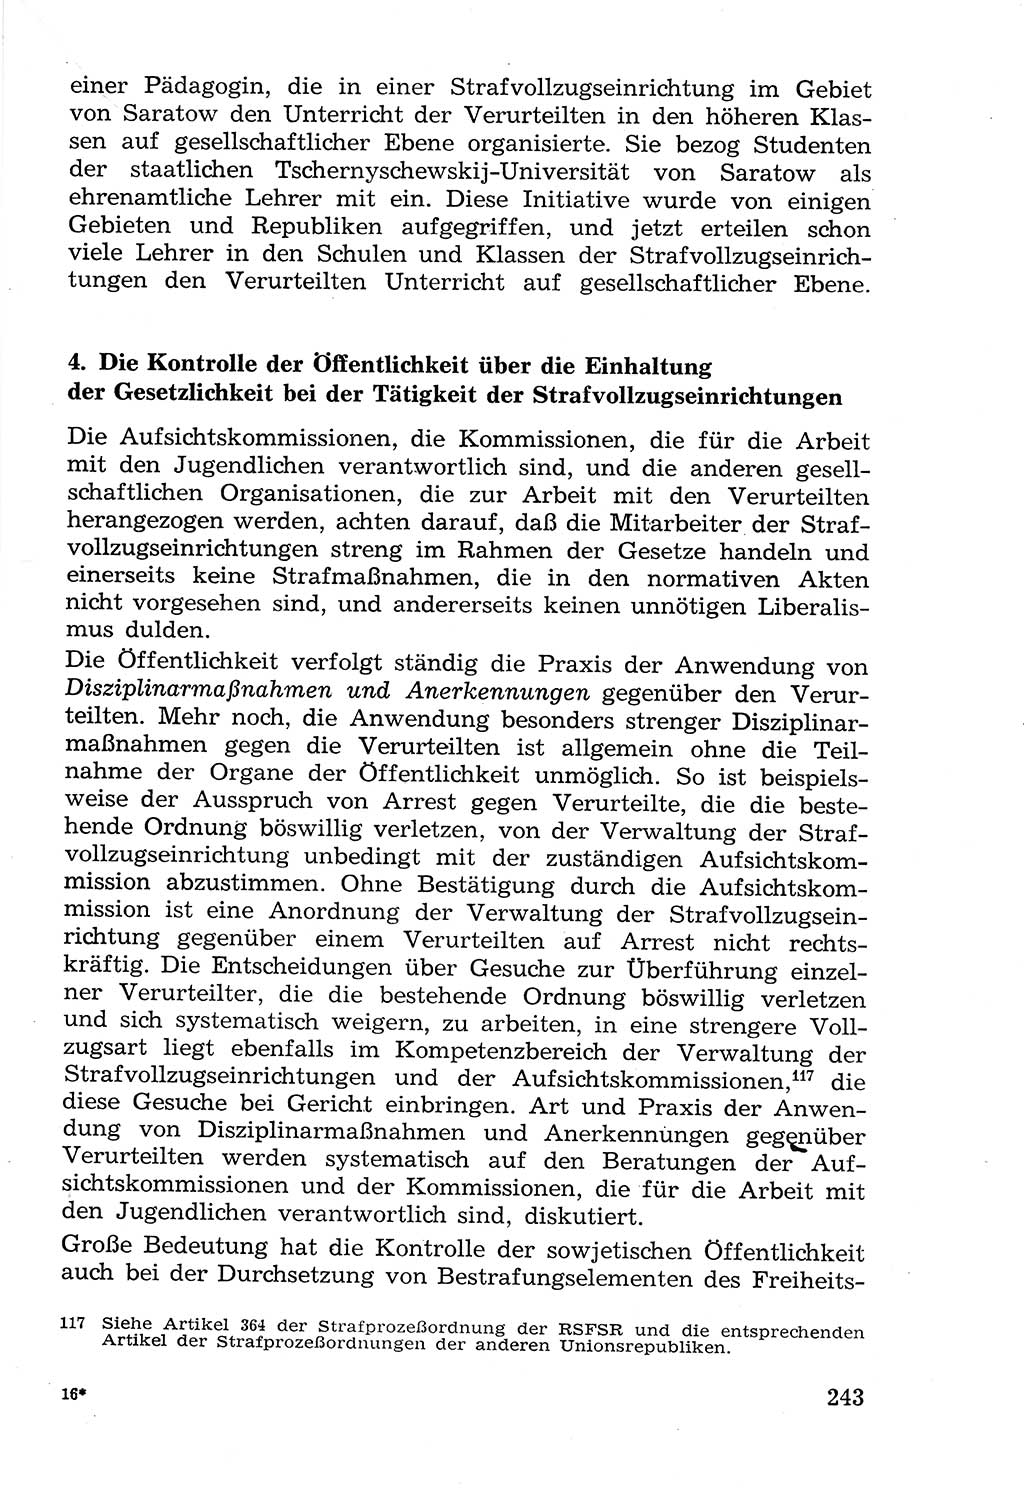 Lehrbuch der Strafvollzugspädagogik [Deutsche Demokratische Republik (DDR)] 1969, Seite 243 (Lb. SV-Pd. DDR 1969, S. 243)